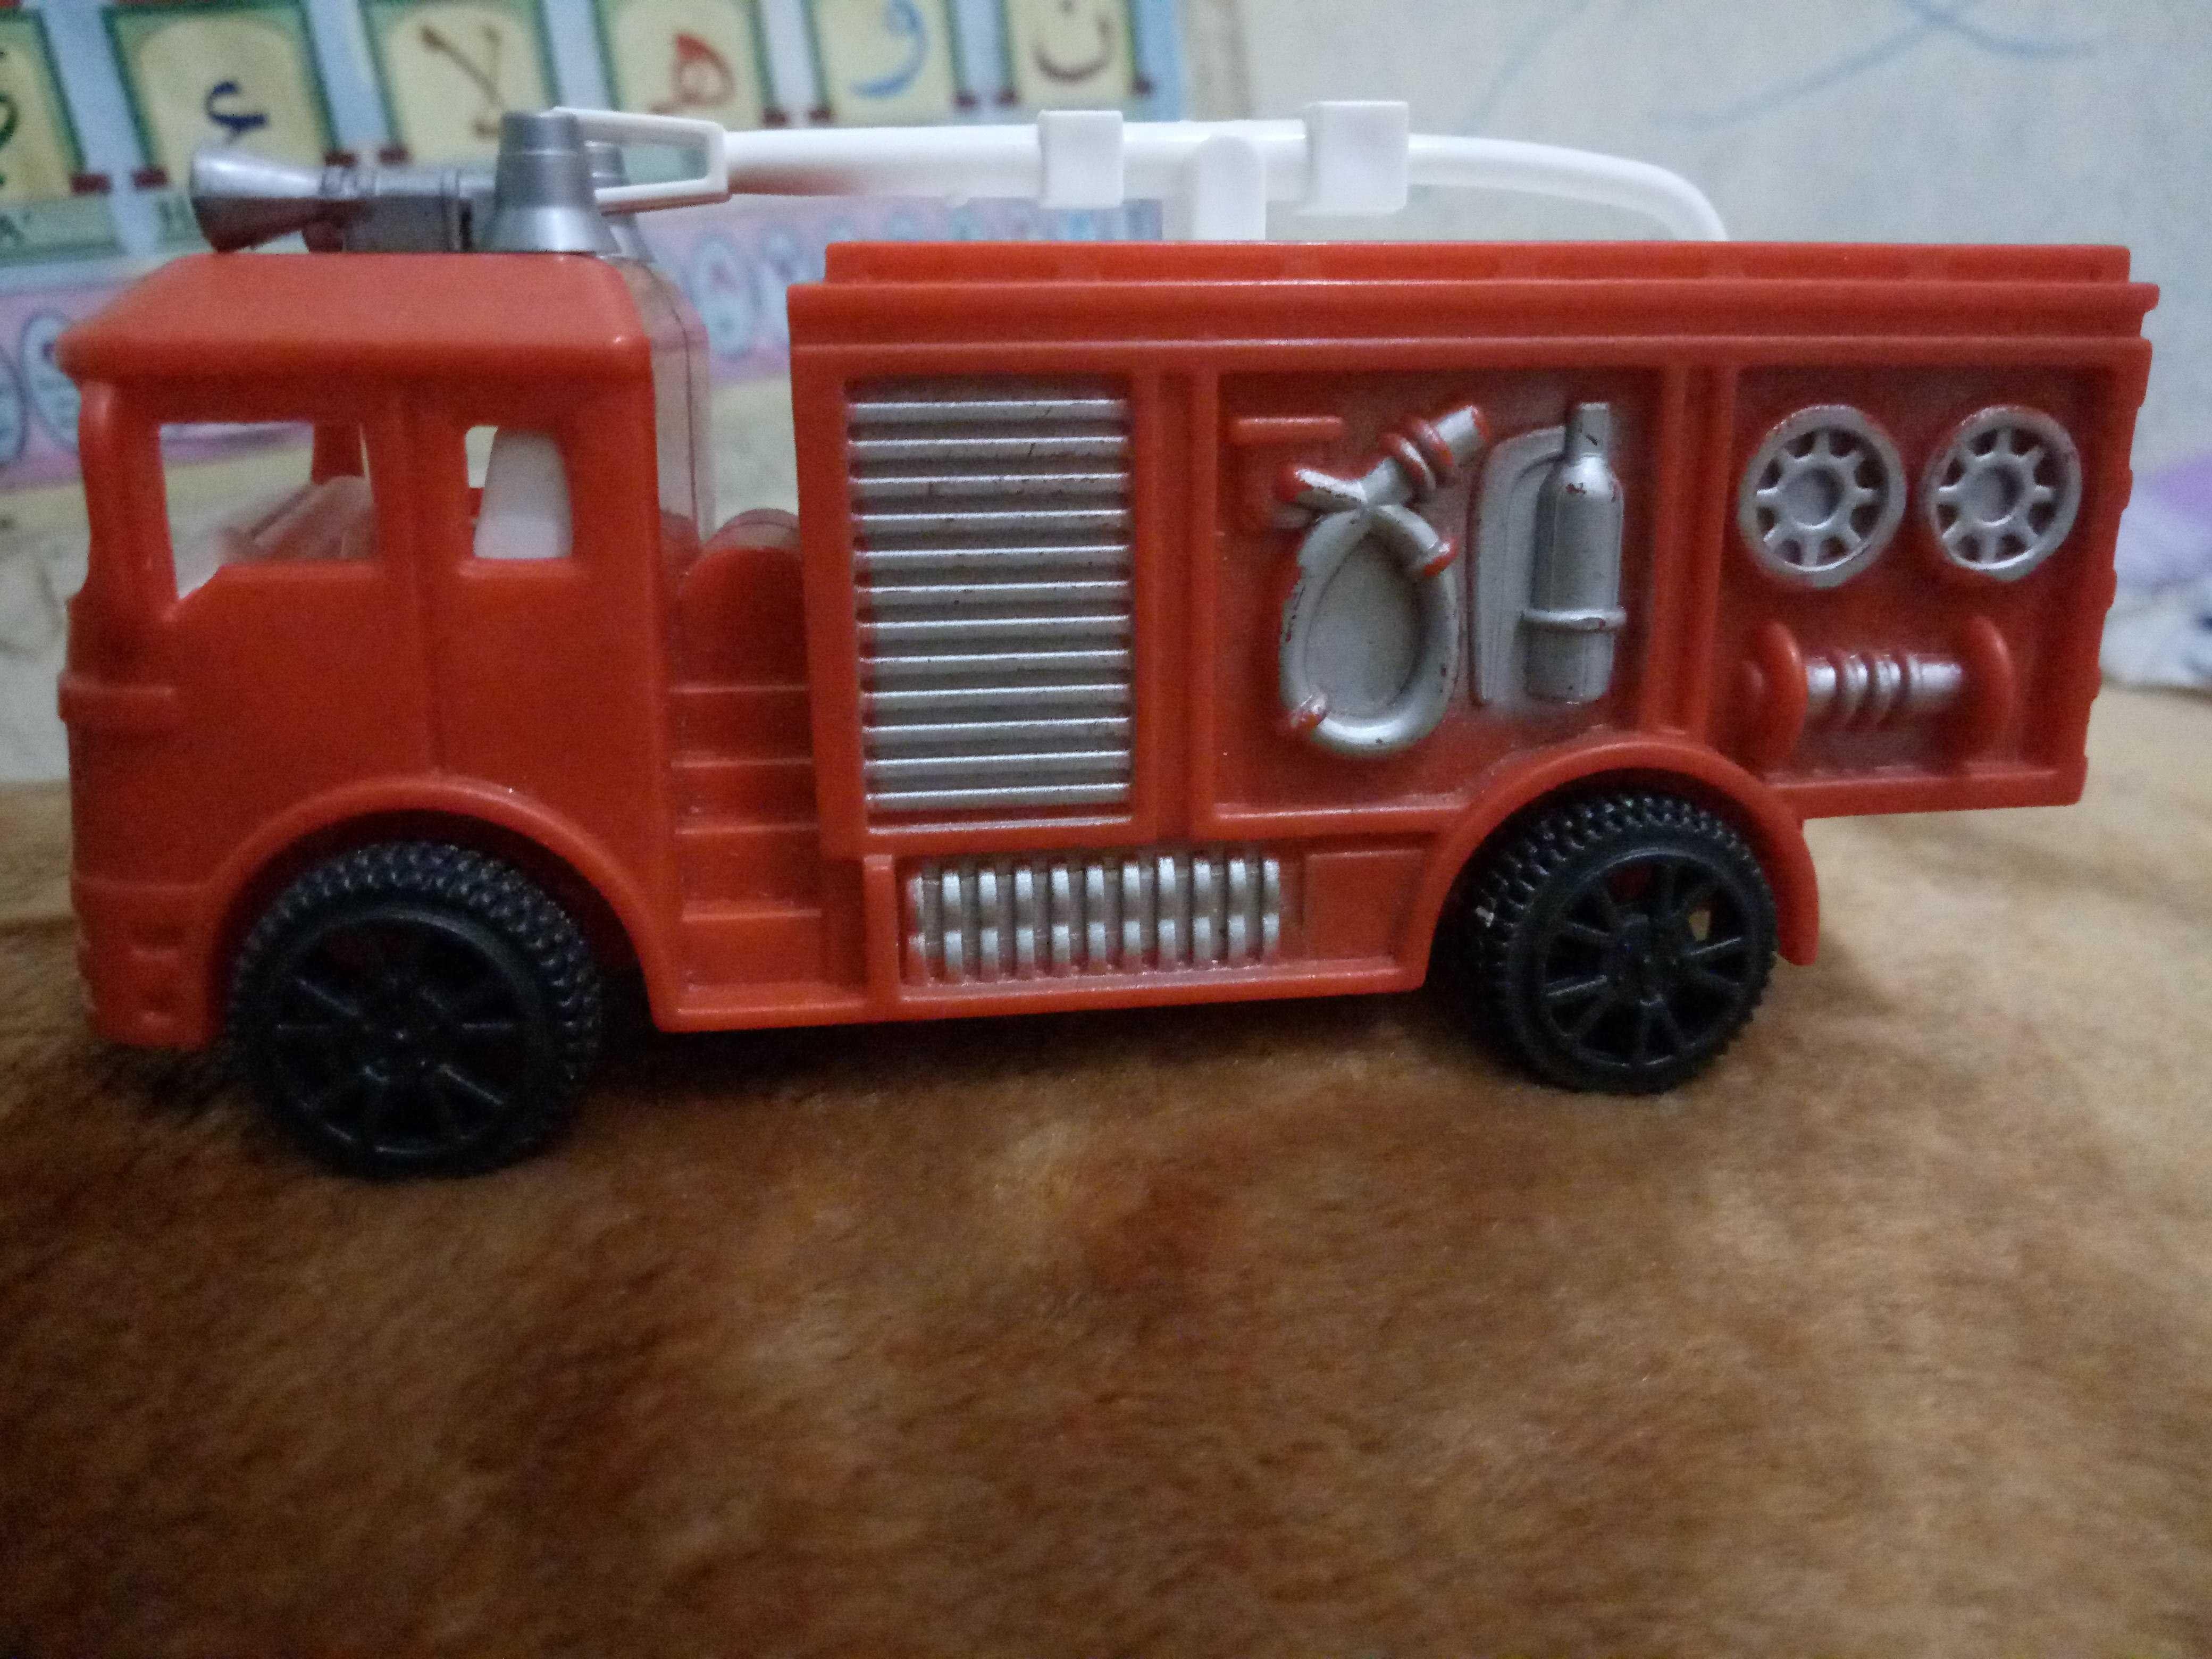 Toy Fire Car Mainan Mobil Pemadam Kebakaran Steemit